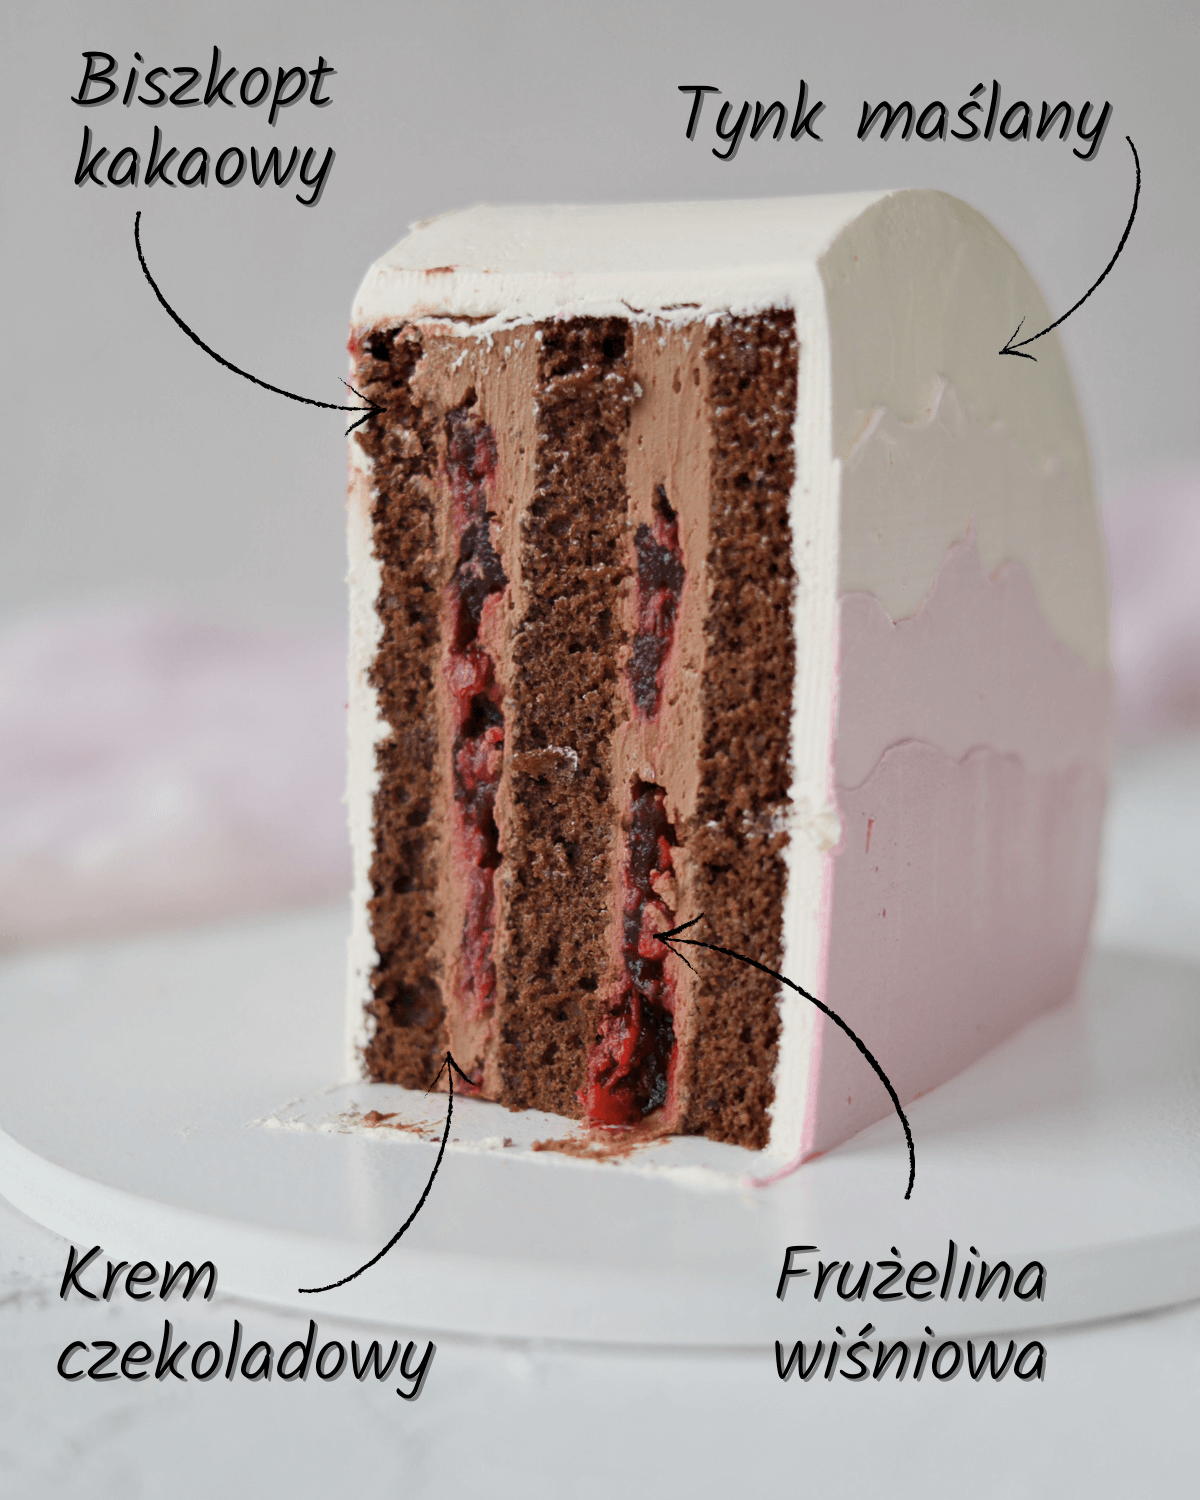 Przewrócony tort (Arch Cake, Top Forward Cake, Portal Cake) tutorial - tynkowanie